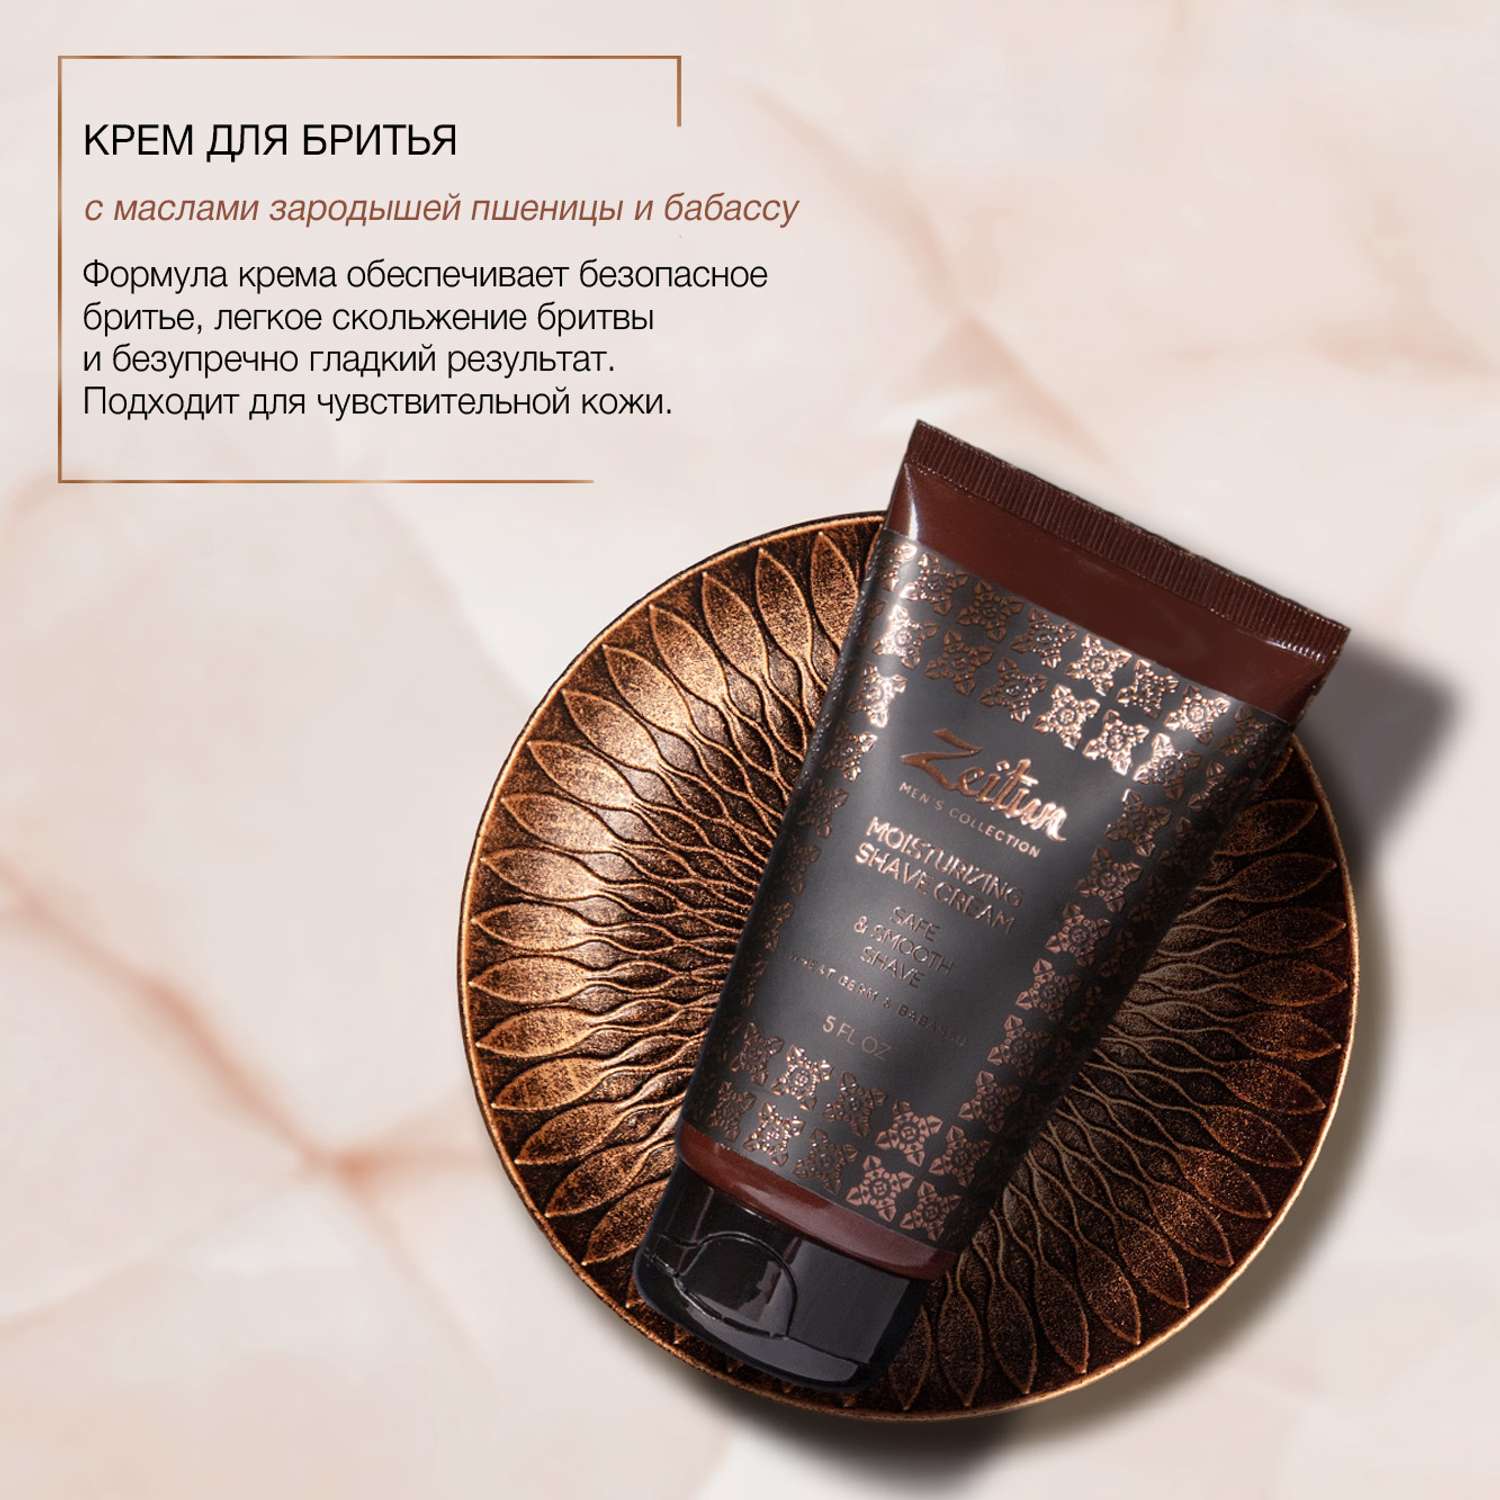 Подарочный набор Zeitun для мужчин Практичный подход шампунь гель для душа крем для бритья - фото 5